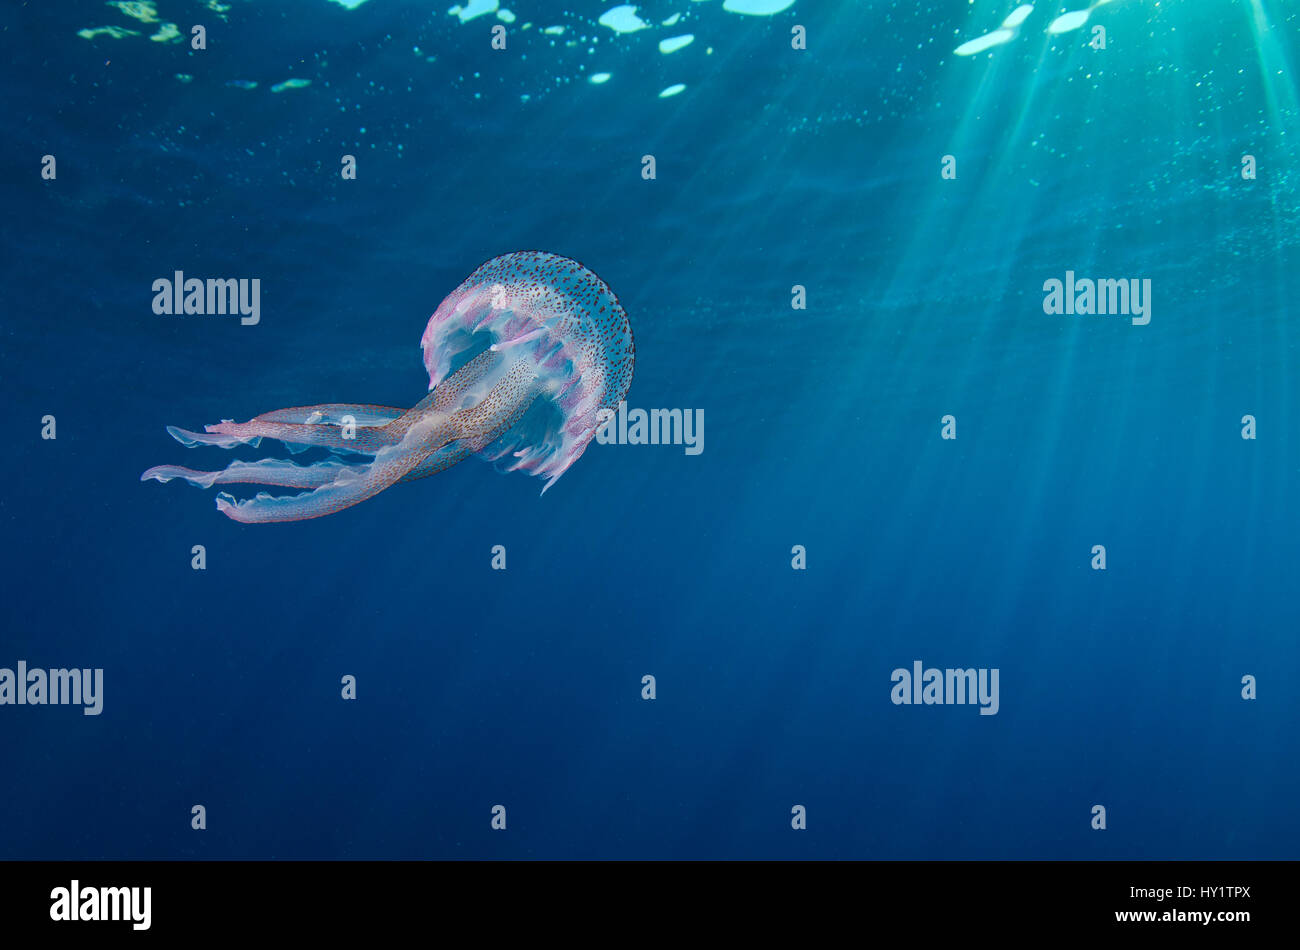 Un petit cténophore (Pelagia noctiluca) nage sous la surface. Aire marine protégée de Portofino (zone Marina Protetta, Portofino, Ligurie, Italie). Mer Méditerranée. Banque D'Images